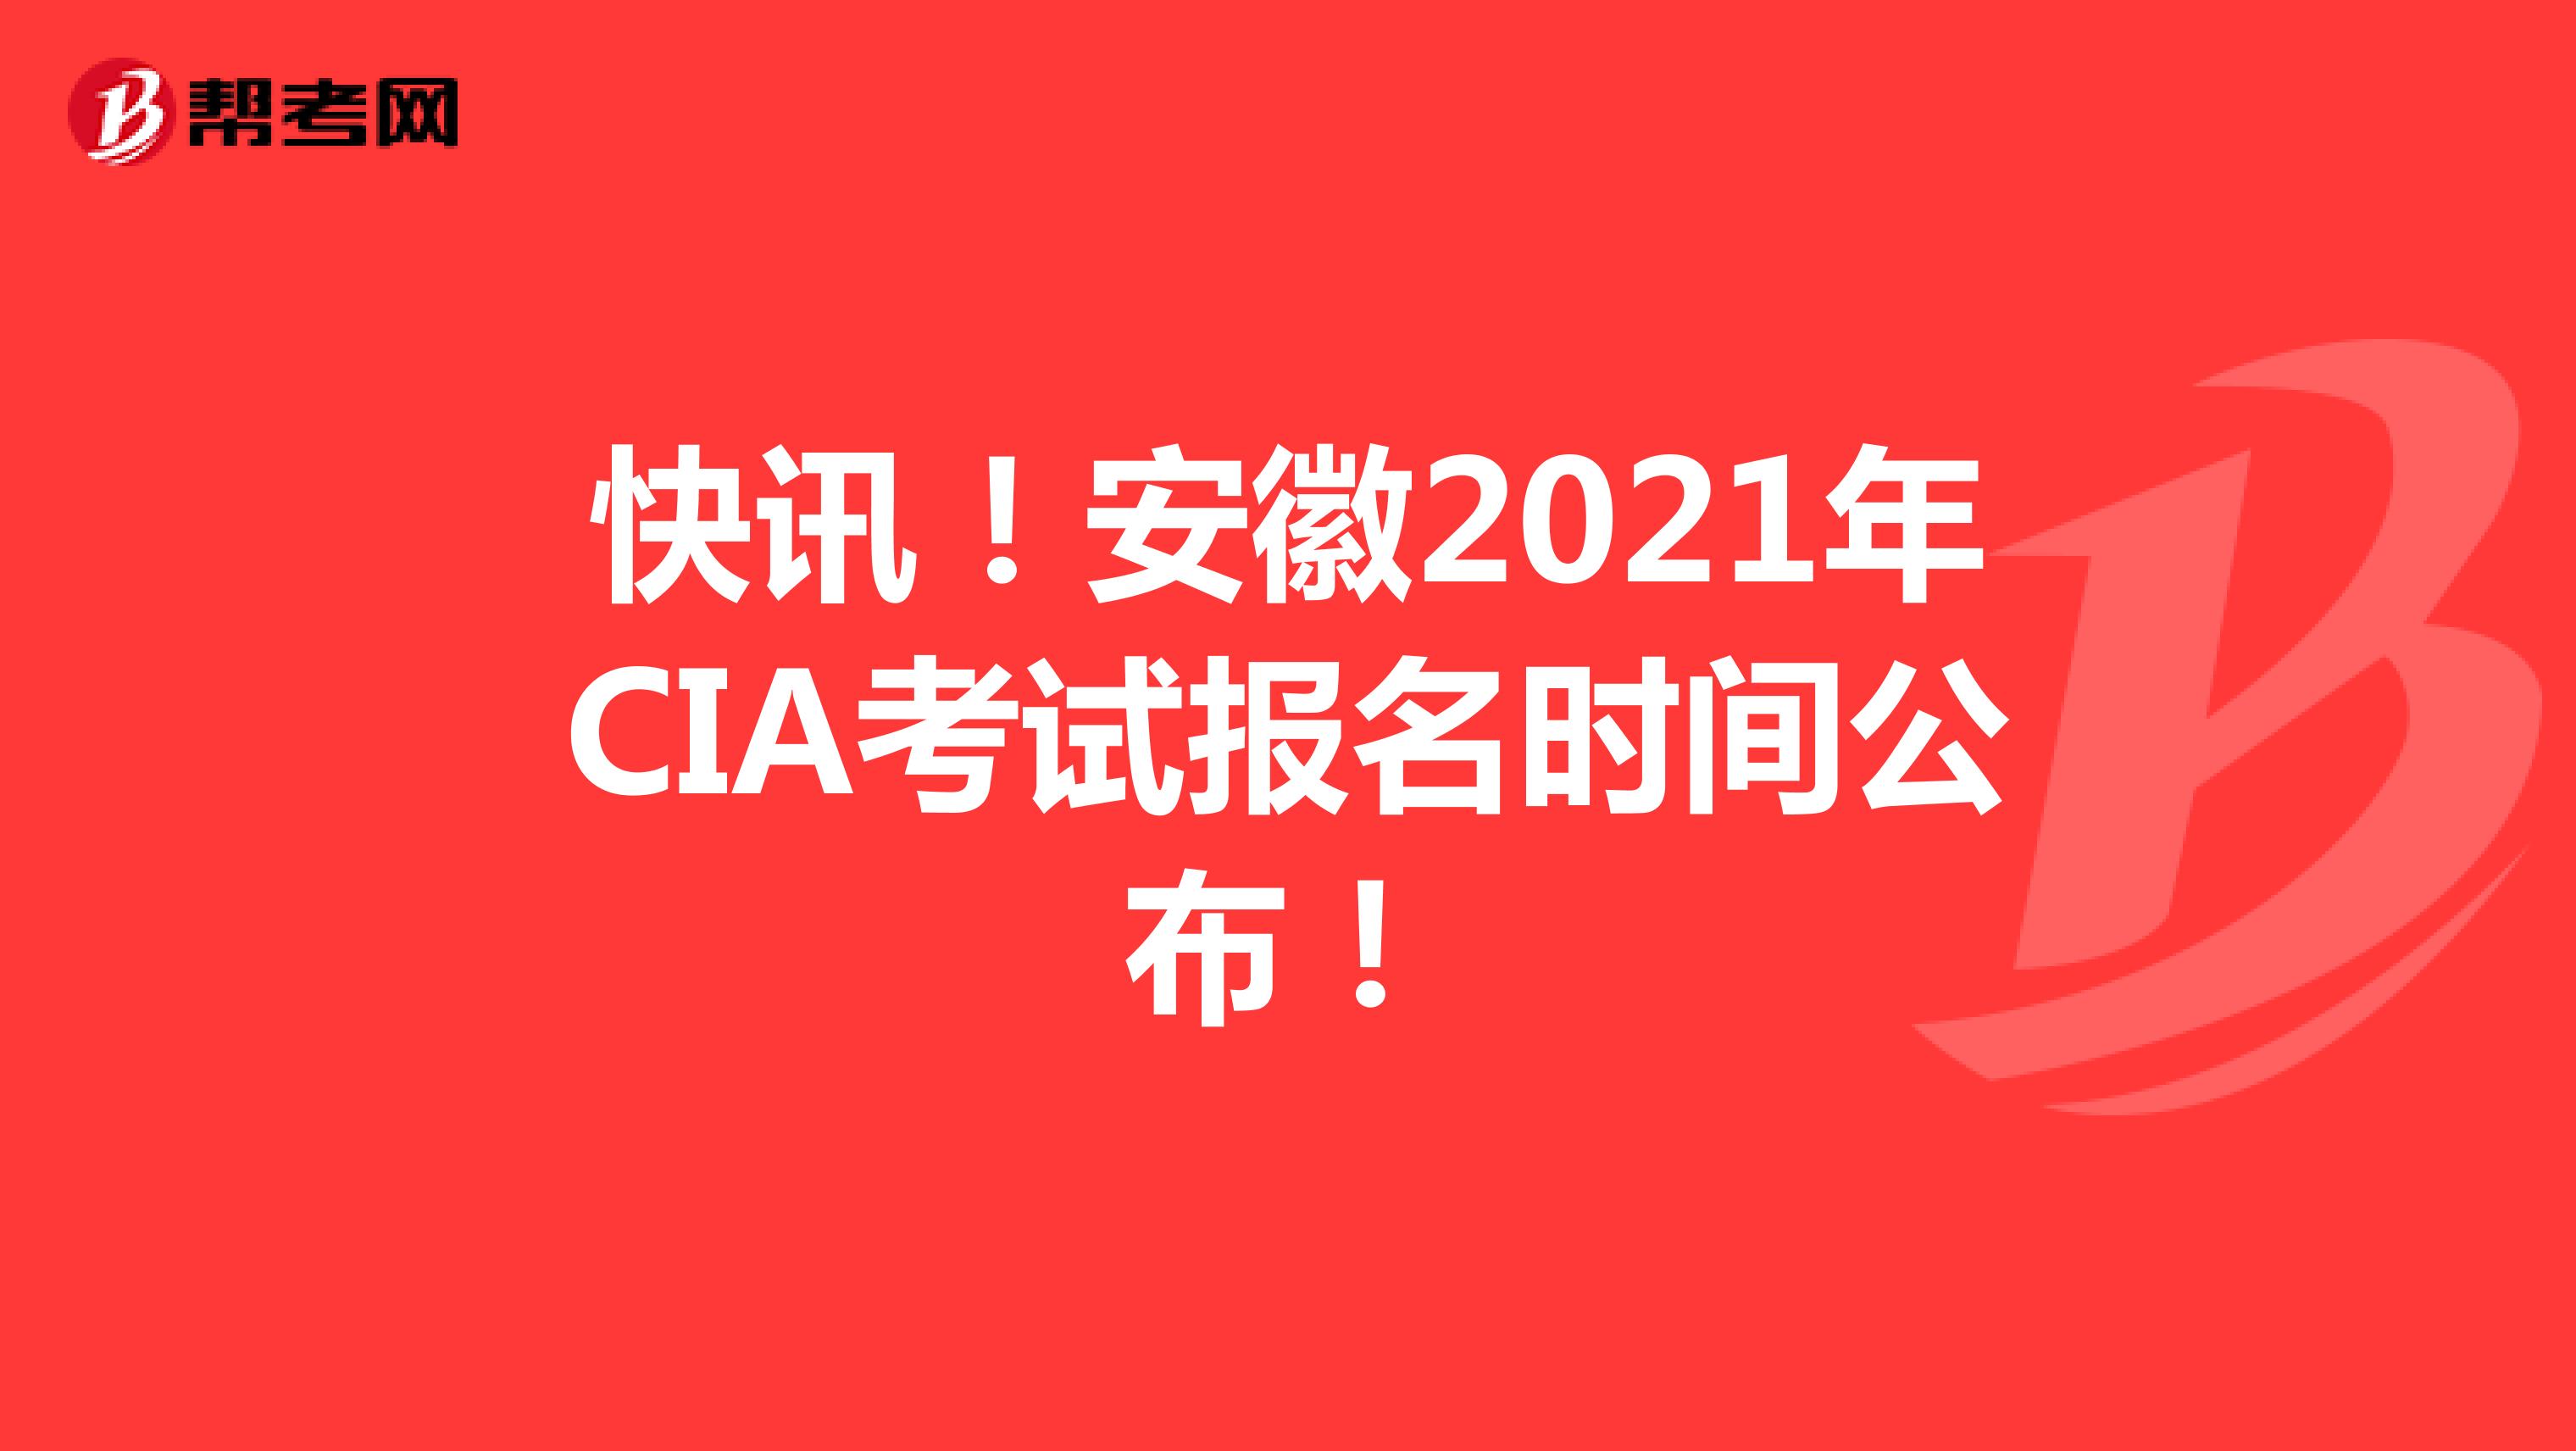 快讯！安徽2021年CIA考试报名时间公布！